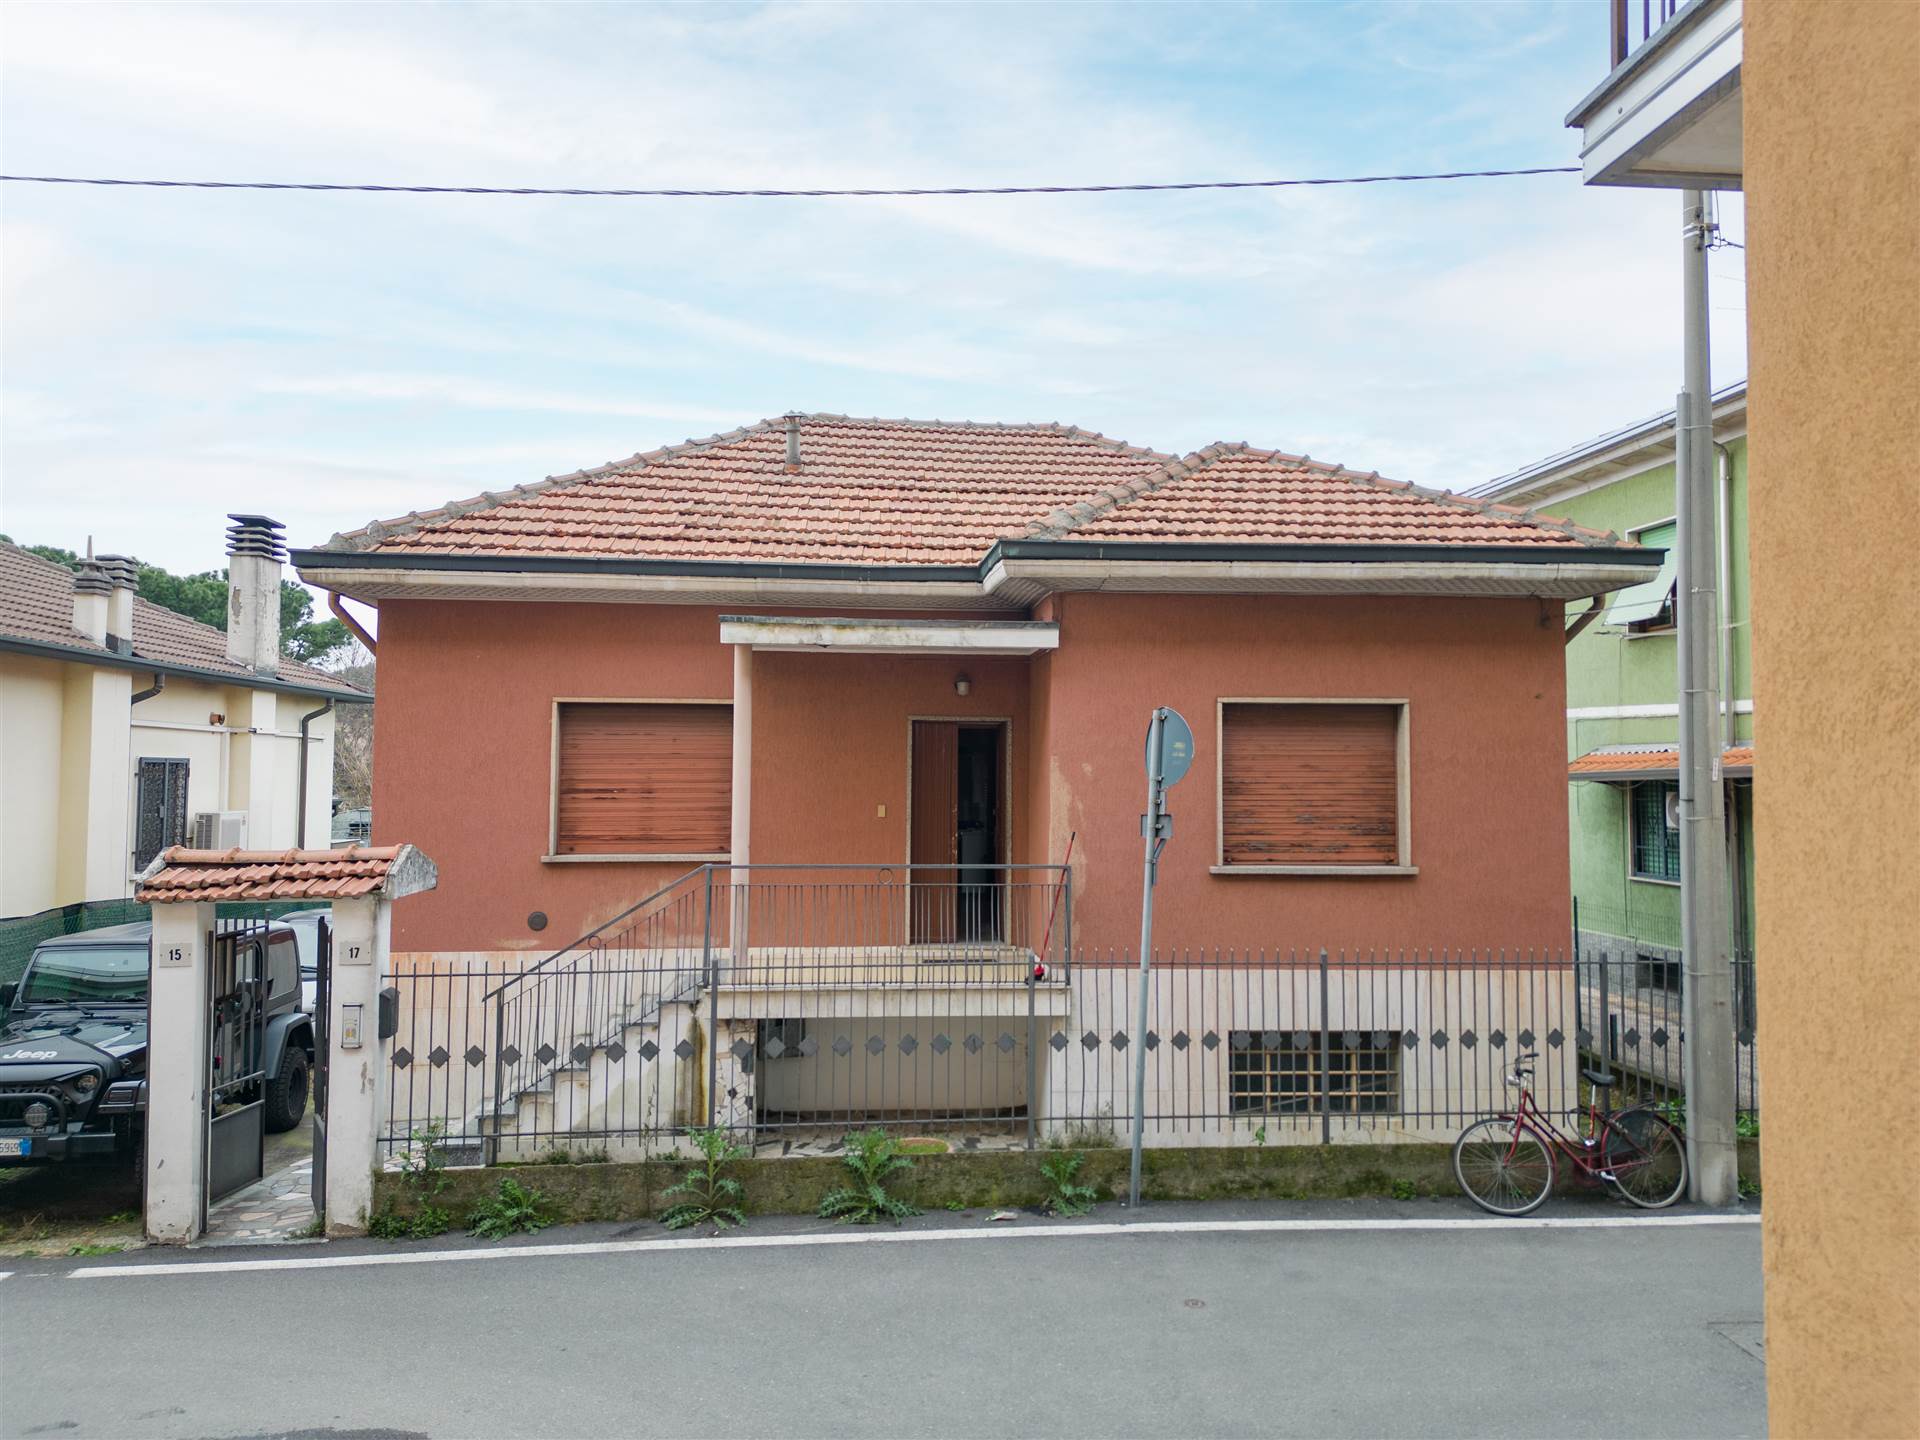 Villa in vendita a Senago, 3 locali, prezzo € 245.000 | PortaleAgenzieImmobiliari.it